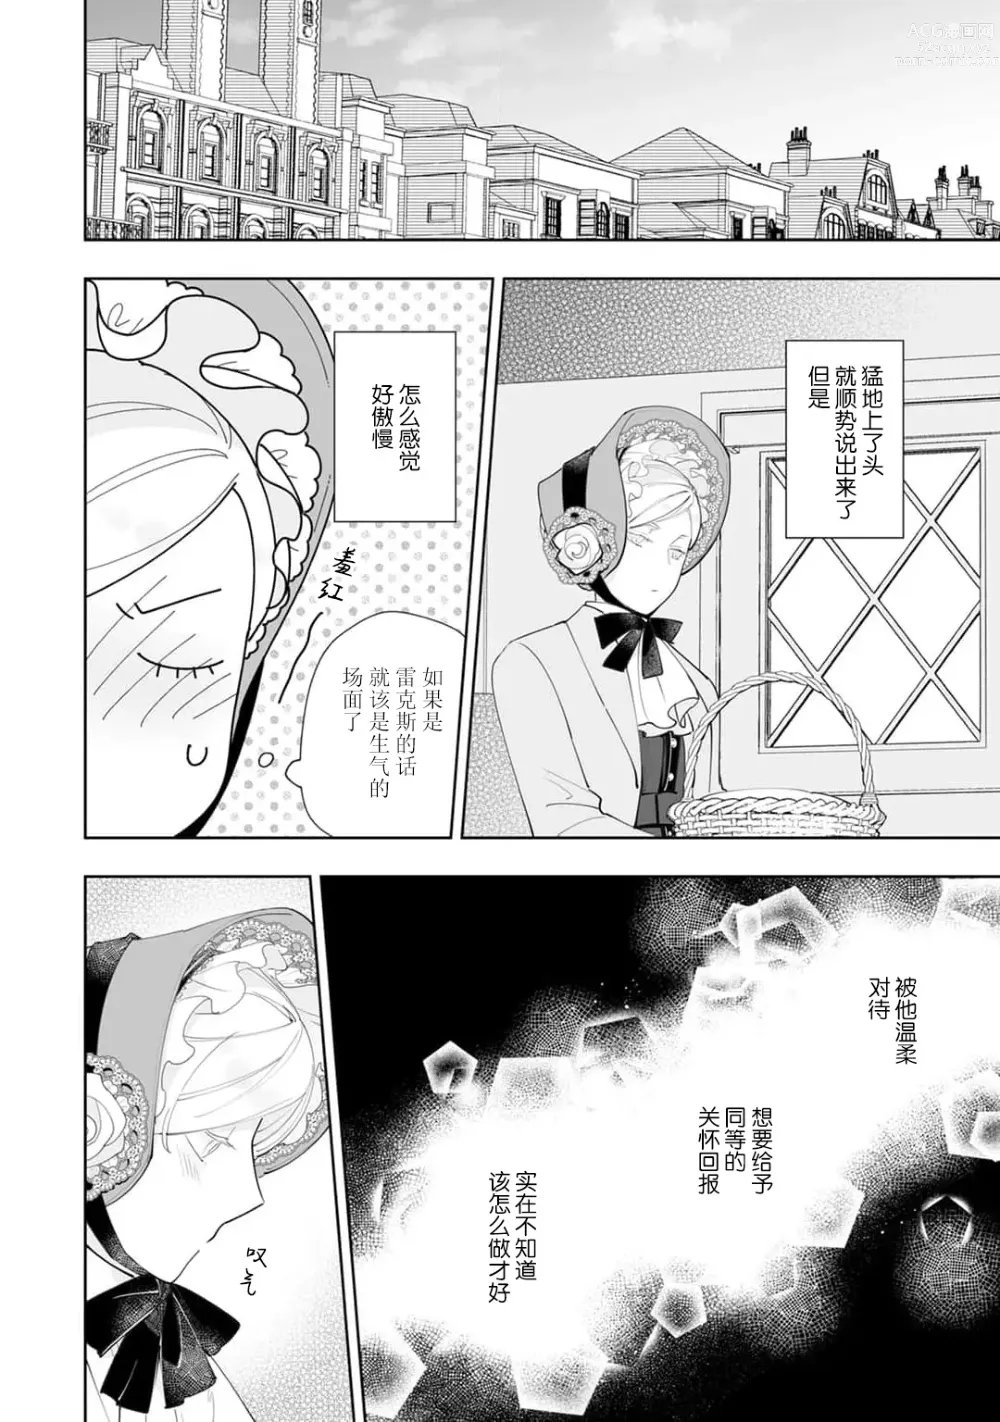 Page 143 of manga 被解除婚约的恶役千金，被帅哥资产家求婚了。 1-4